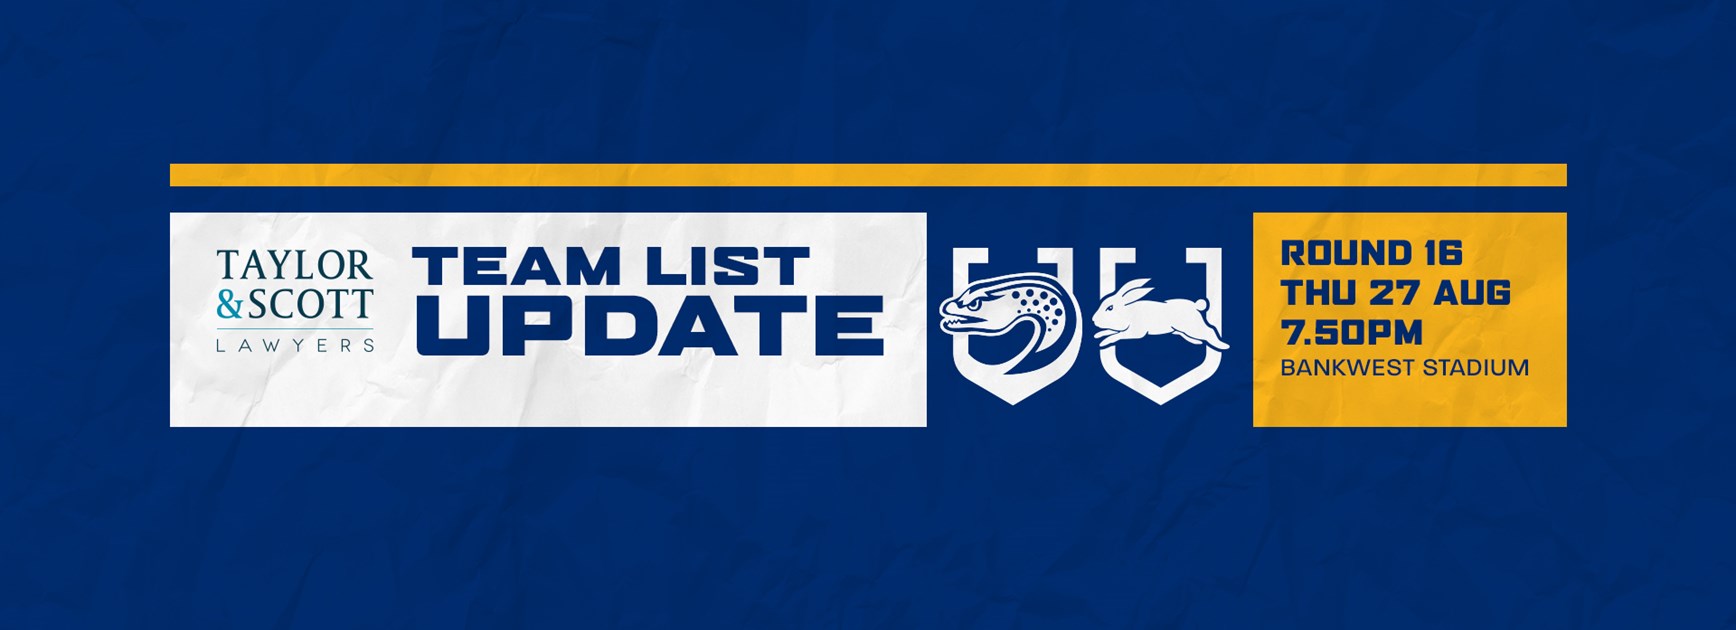 Team List Update: Eels v Rabbitohs, Round 16